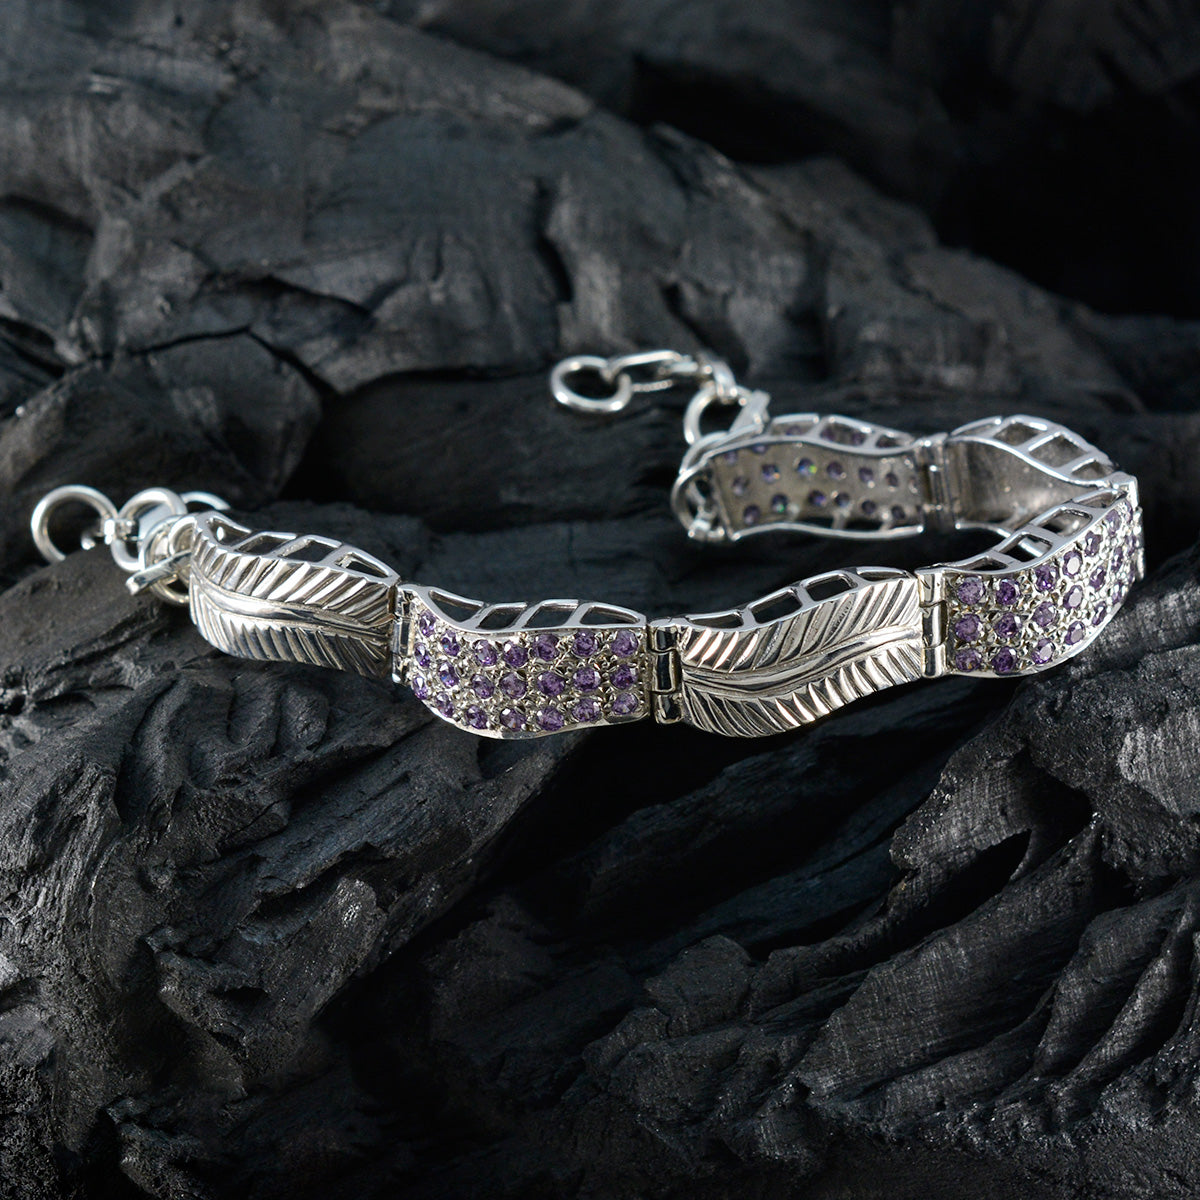 Riyo Bracelet complet en argent sterling 925 pour femme, bracelet en améthyste, serti de lunette avec lien, bracelet à breloques, taille L 15,2 à 21,6 cm.